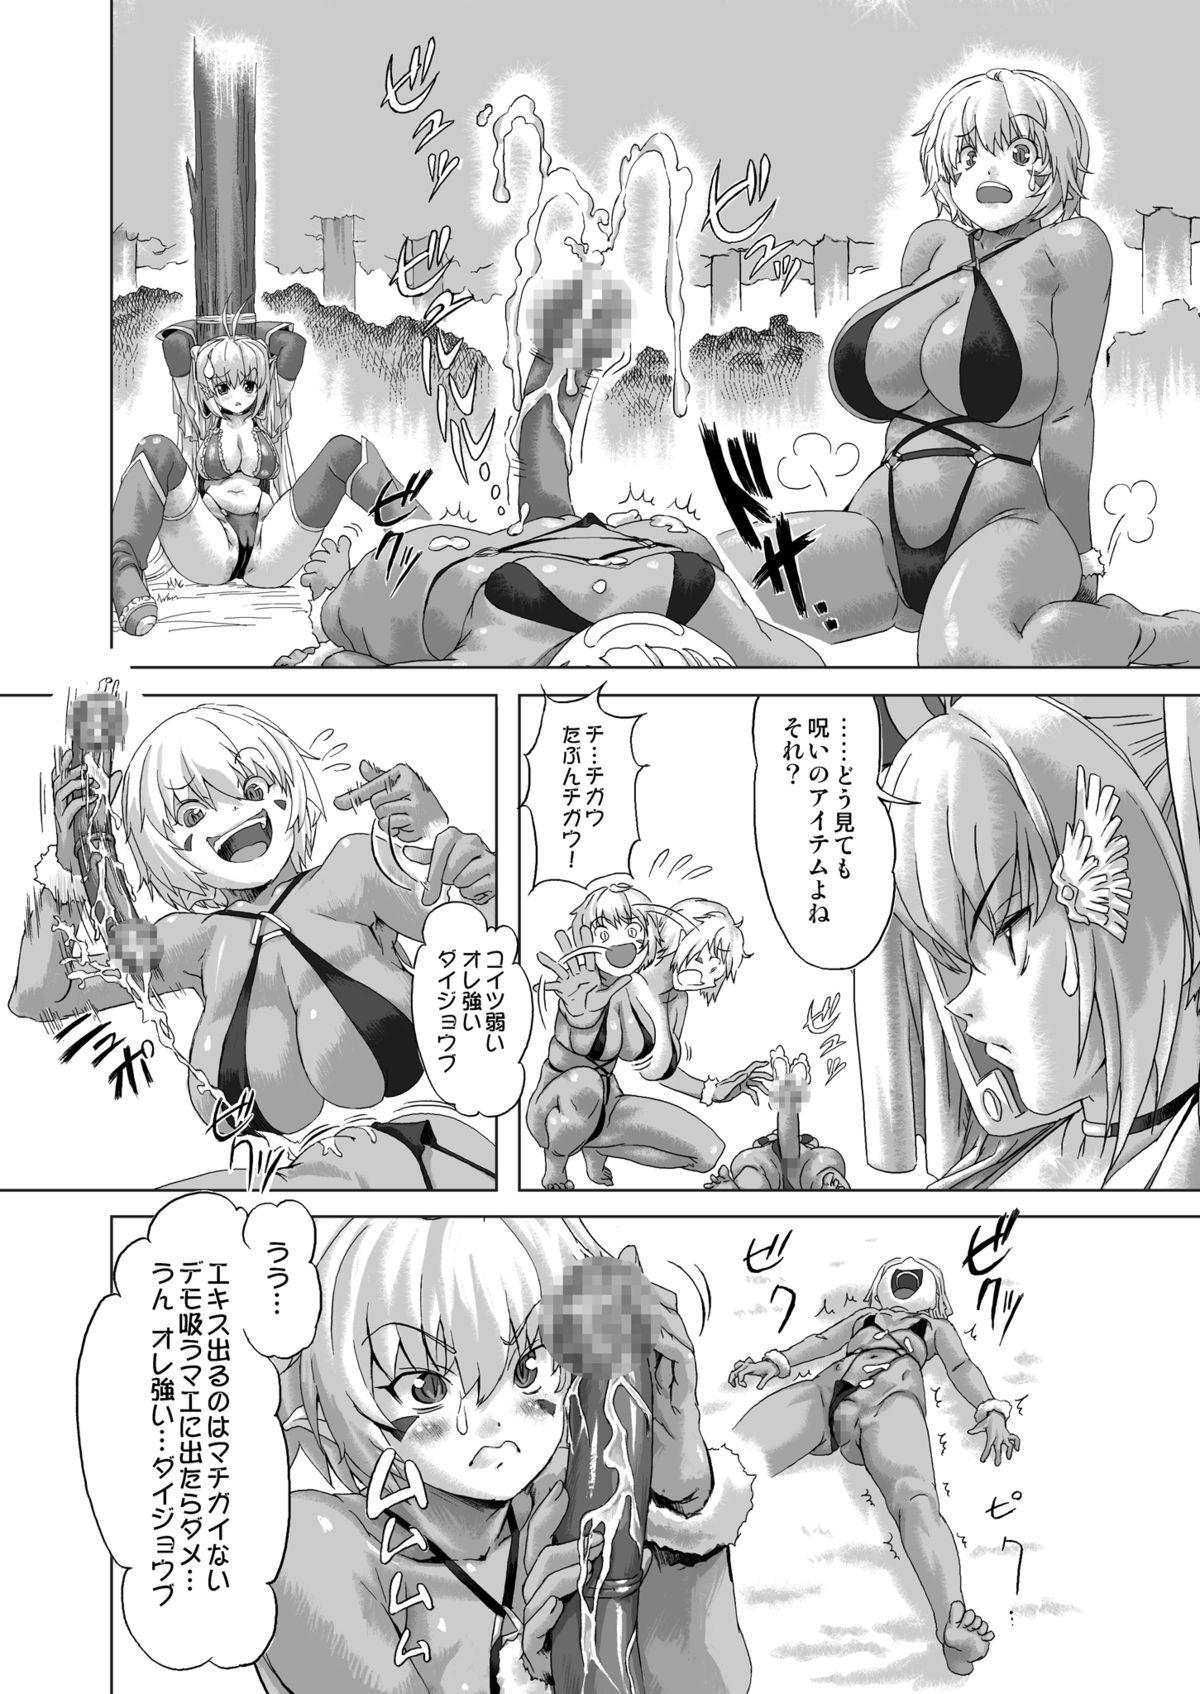 Office Zoku Senshi vs. - Dragon quest iii Blow - Page 9